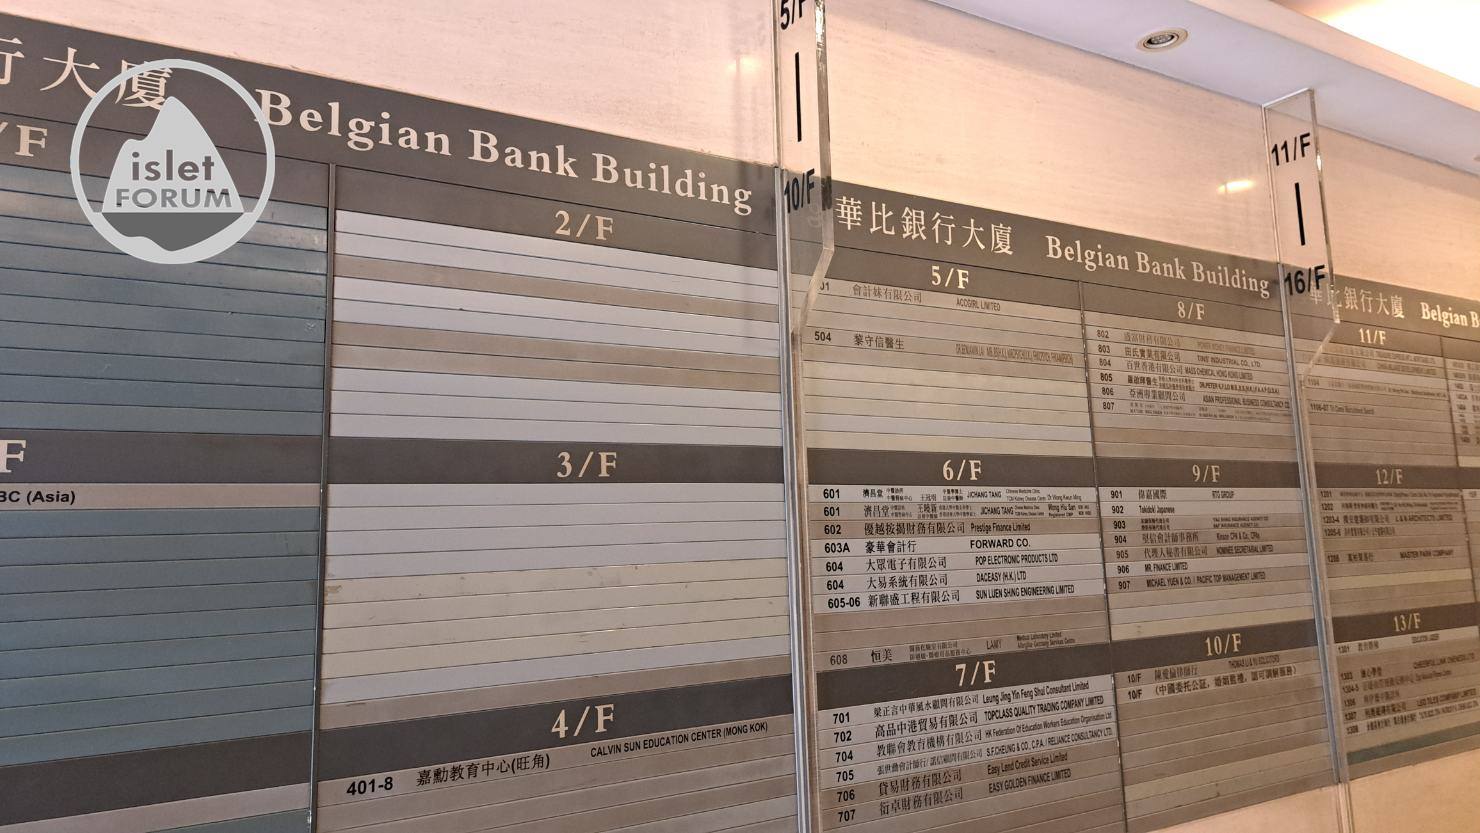 華比銀行大廈：華比銀行大廈呢 Belgian Bank Building  (4).jpg